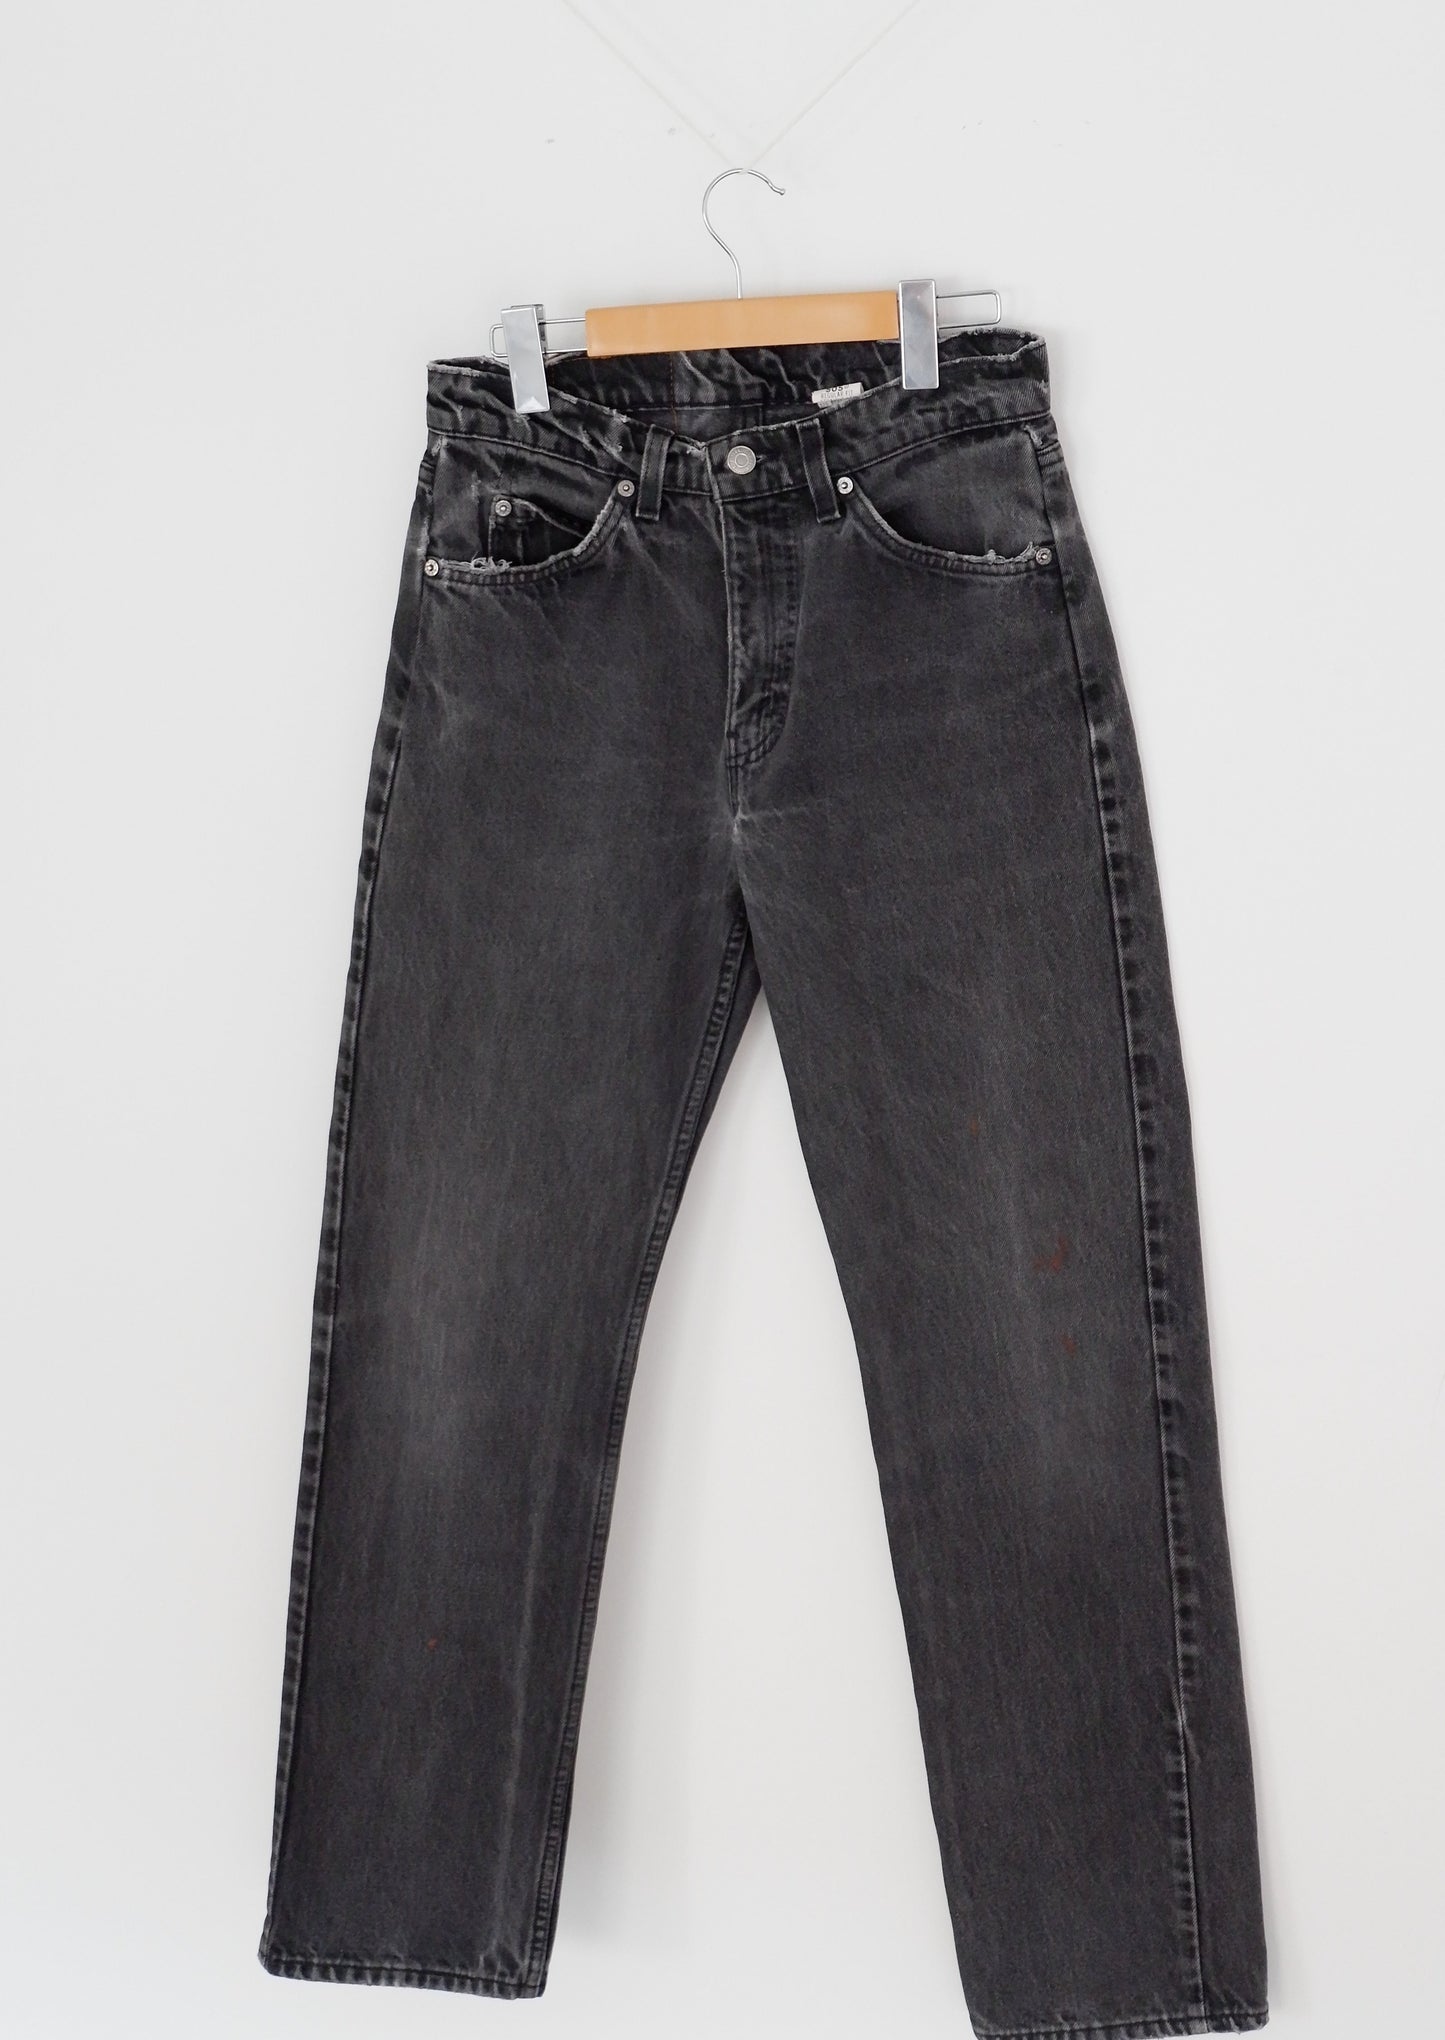 Levis Vintage 505 Black Jeans - 29